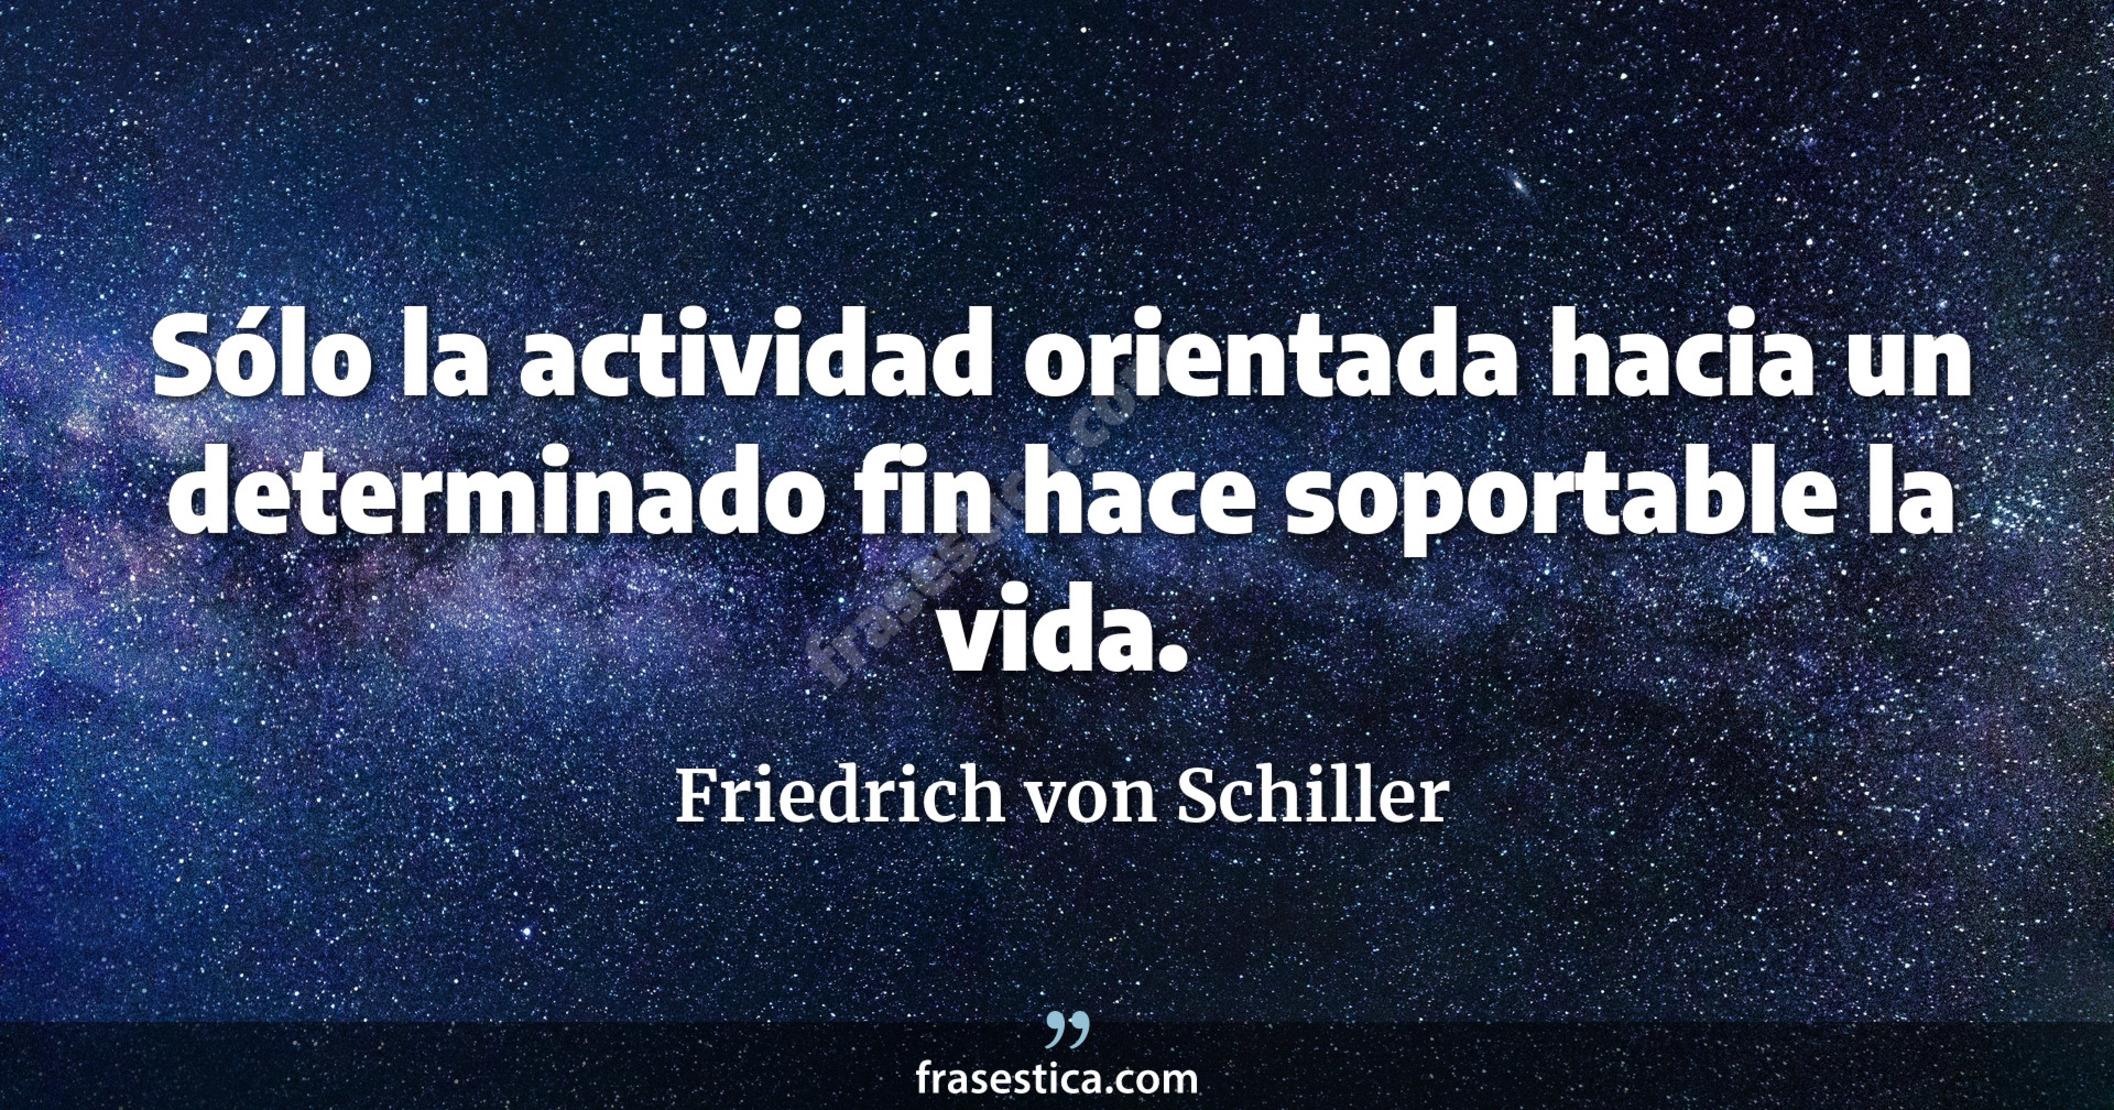 Sólo la actividad orientada hacia un determinado fin hace soportable la vida. - Friedrich von Schiller